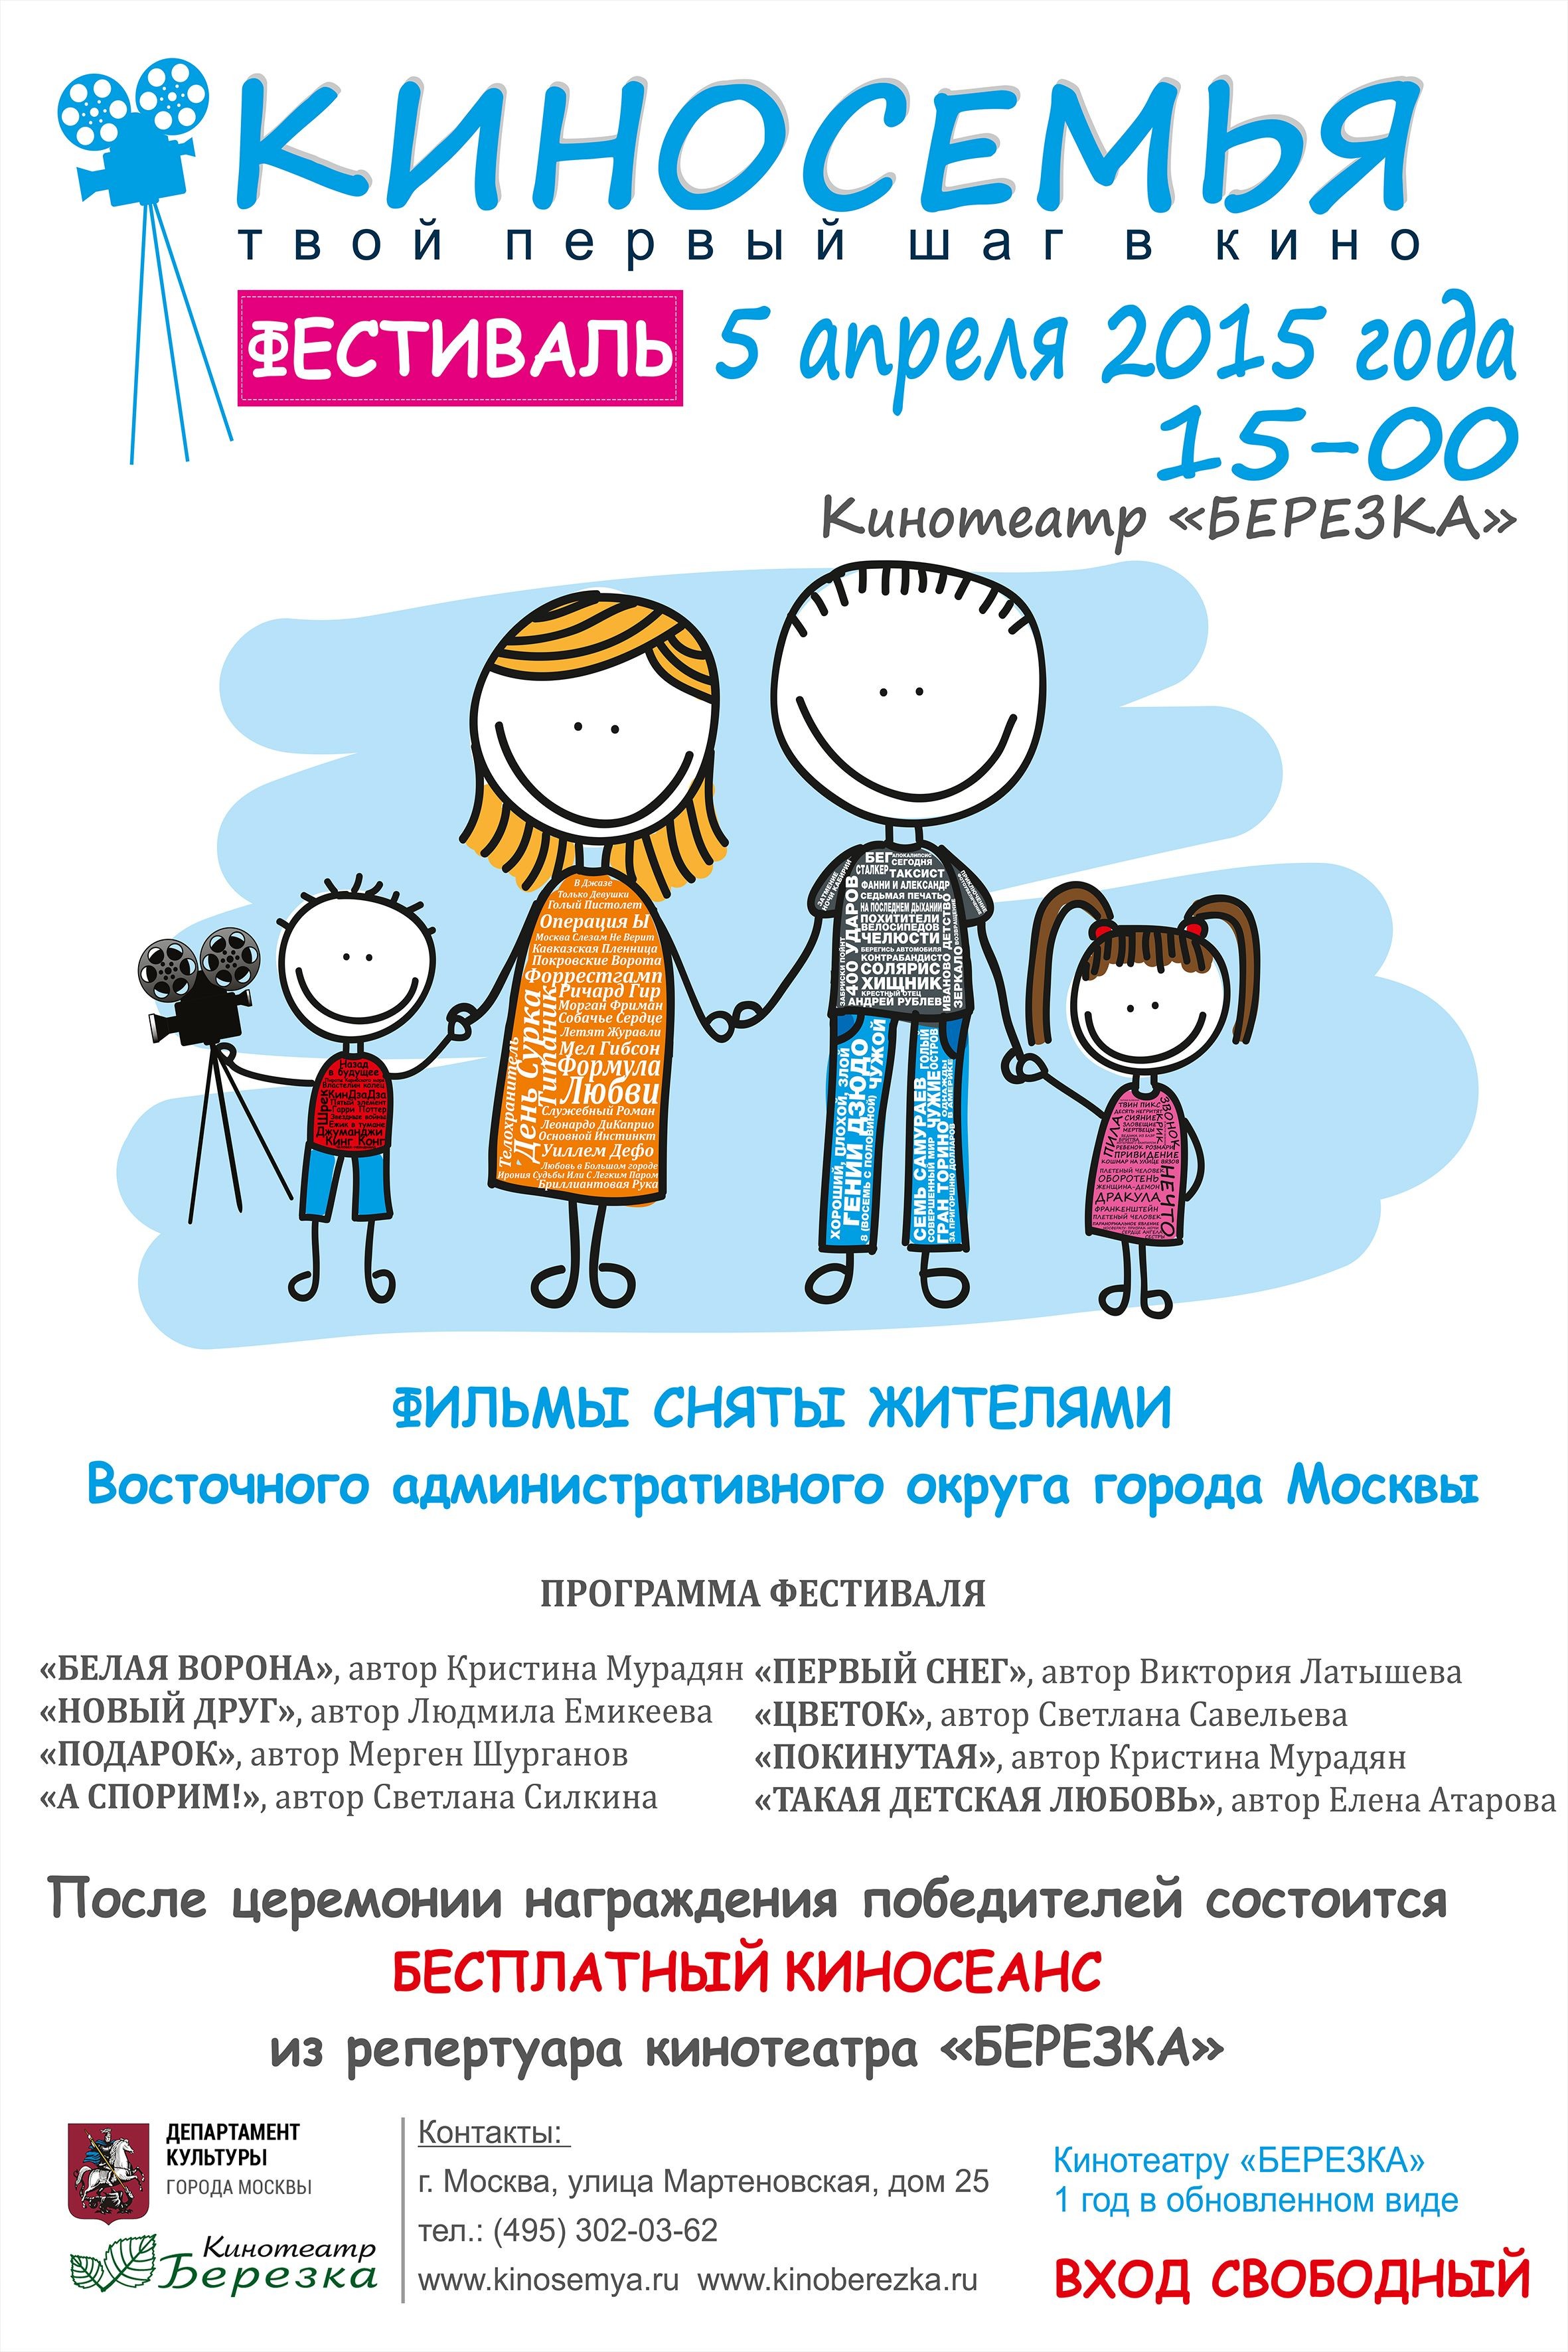 5 апреля 2015 года в 15-00 при поддержке Департамента культуры города Москвы в кинотеатре «Березка» состоится фестиваль «КИНОСЕМЬЯ»